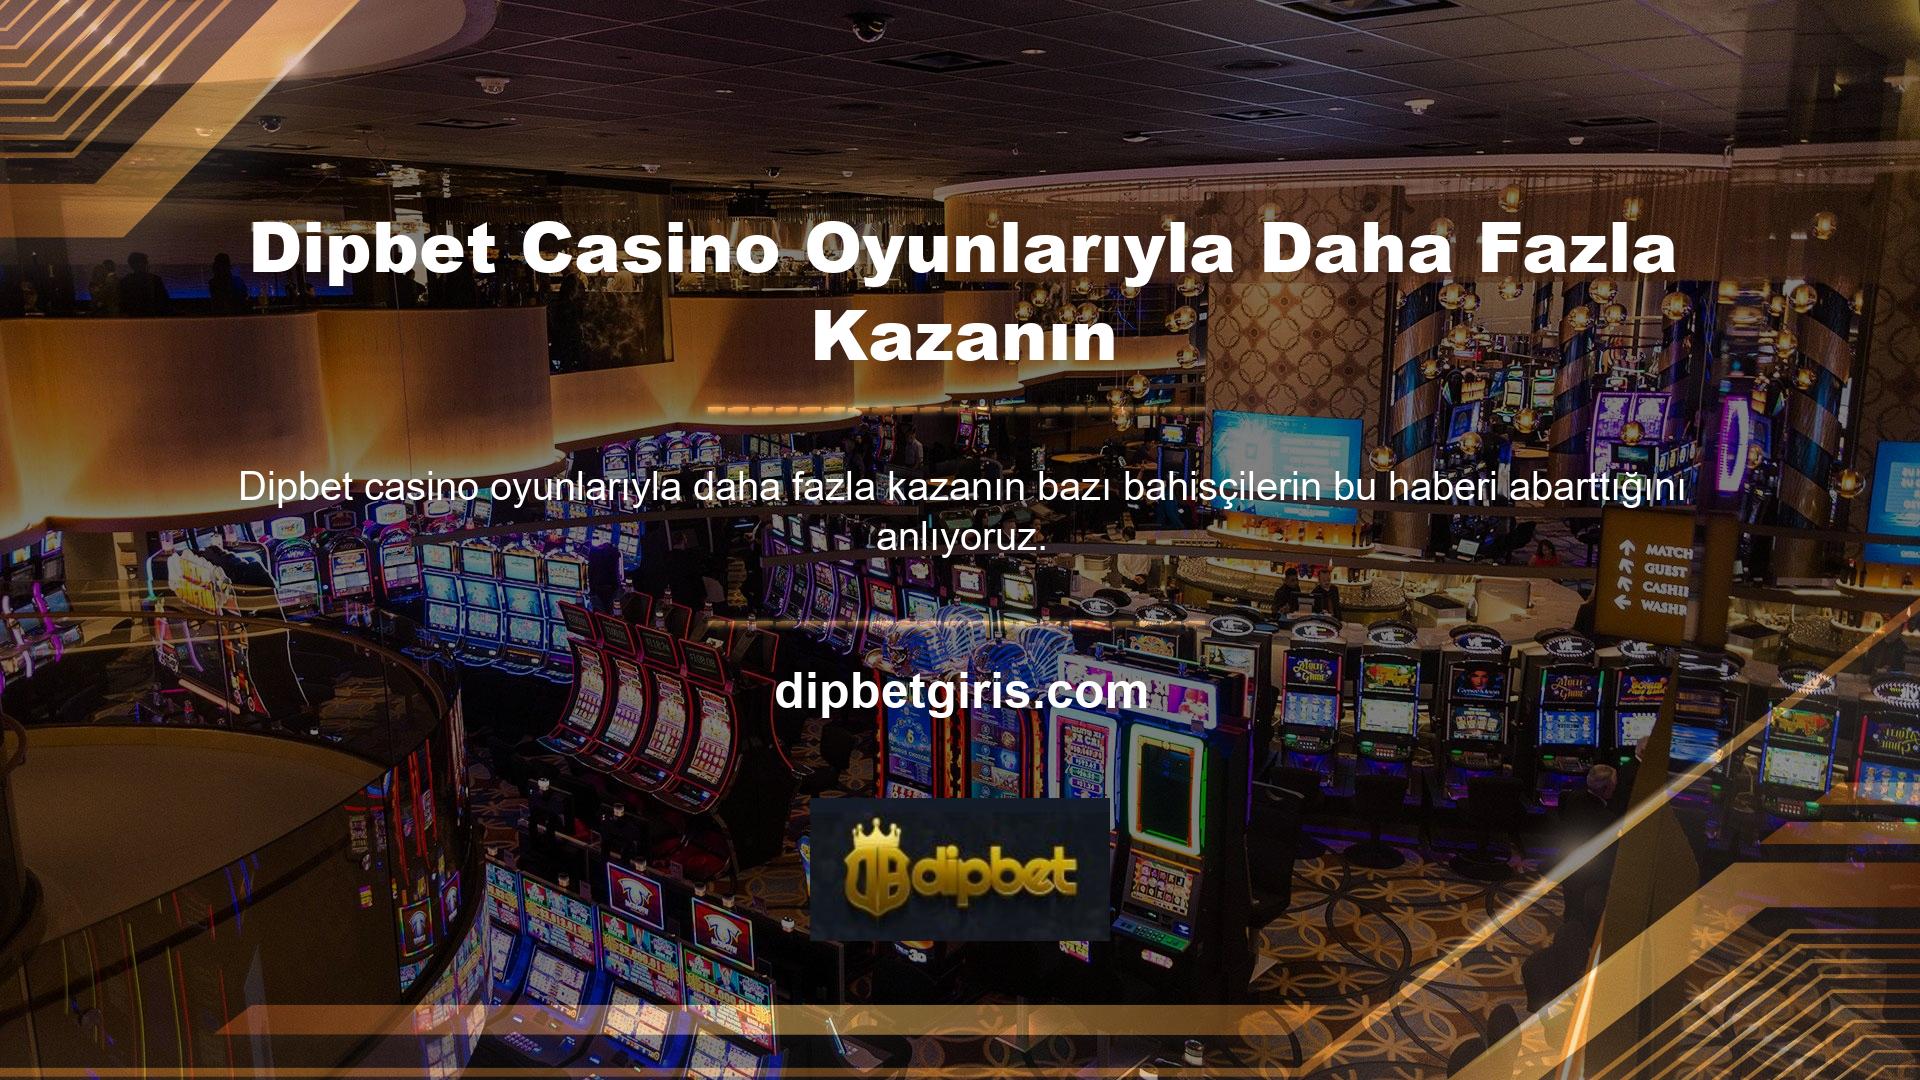 Dipbet Casino Games Win More gibi kullanıcı odaklı platformlar bu sistemi sadece bilgilendirme amaçlı kullanmaktadır